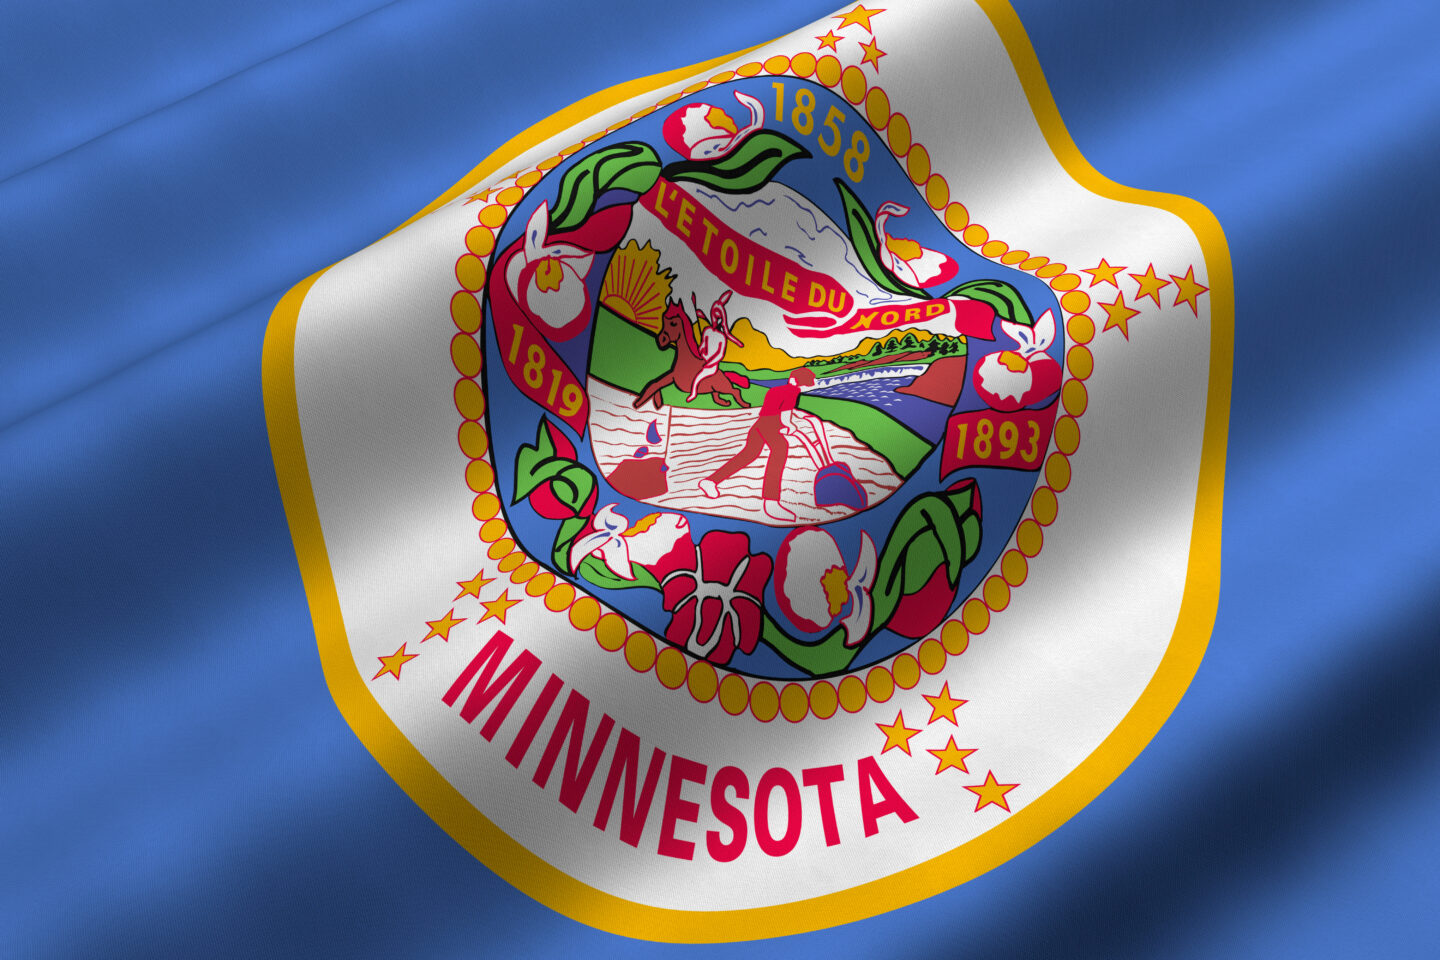 Minnesotast sai 23. osariik meelelahutusliku kanepi legaliseerimiseks